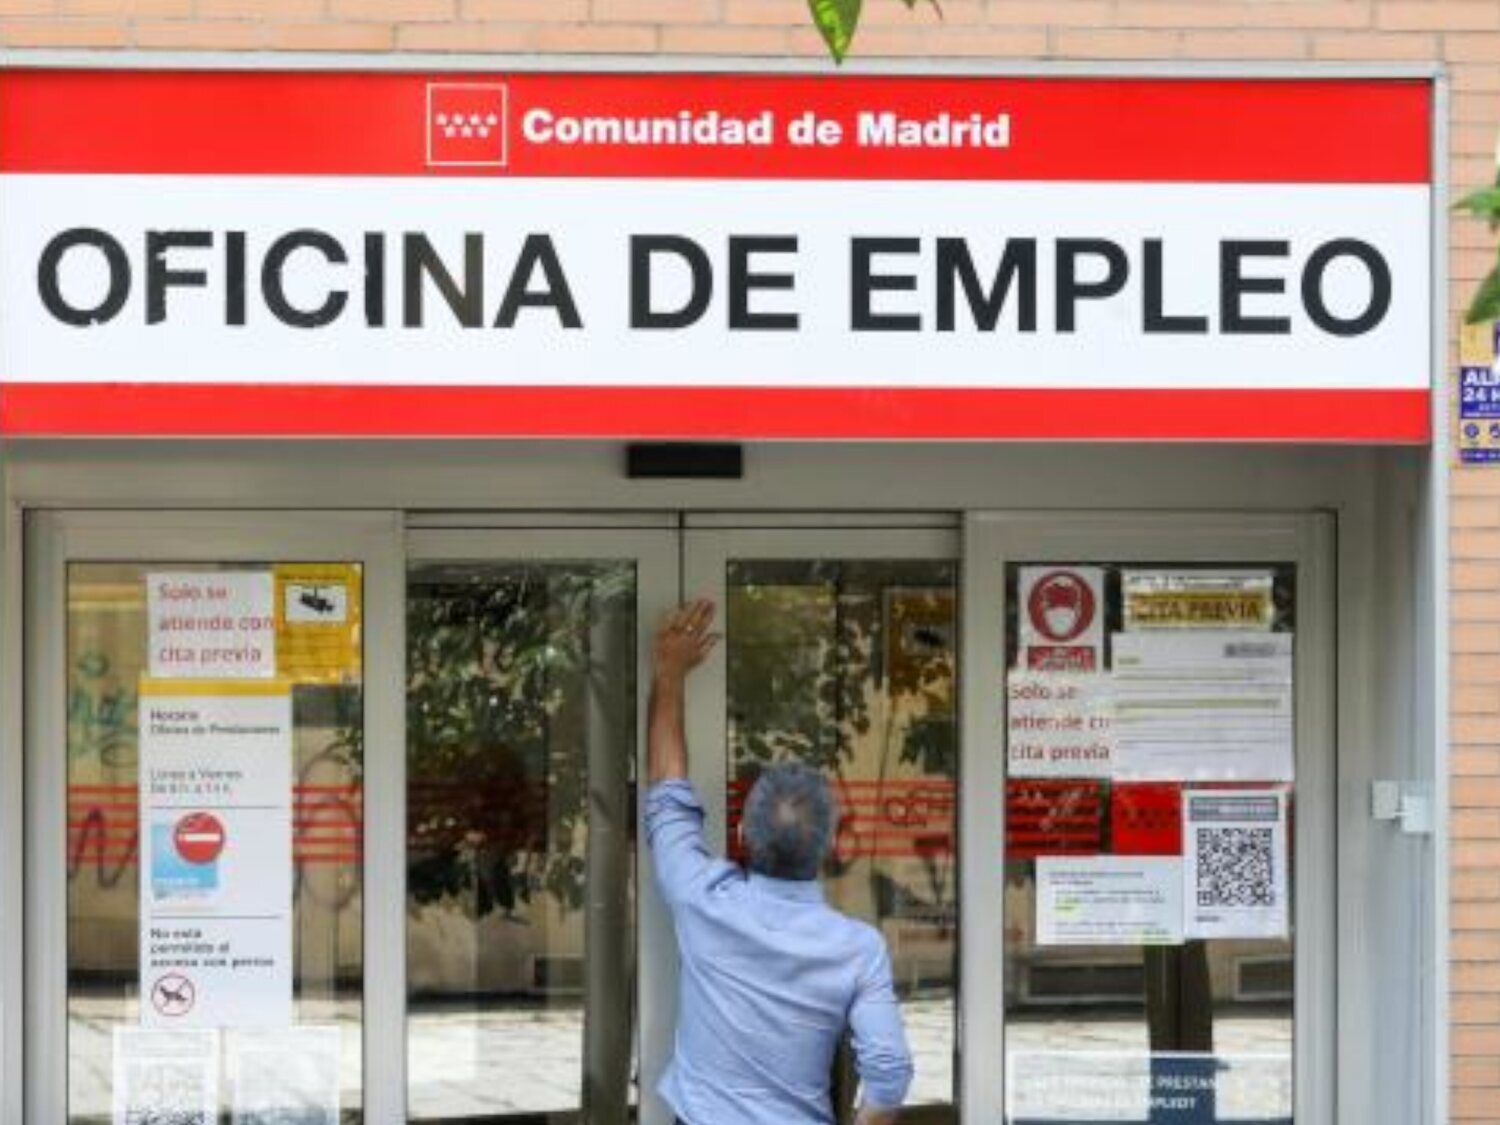 El SEPE publica más de 10.000 nuevas ofertas de trabajo: contrato fijo y sueldo de hasta 54.000 euros